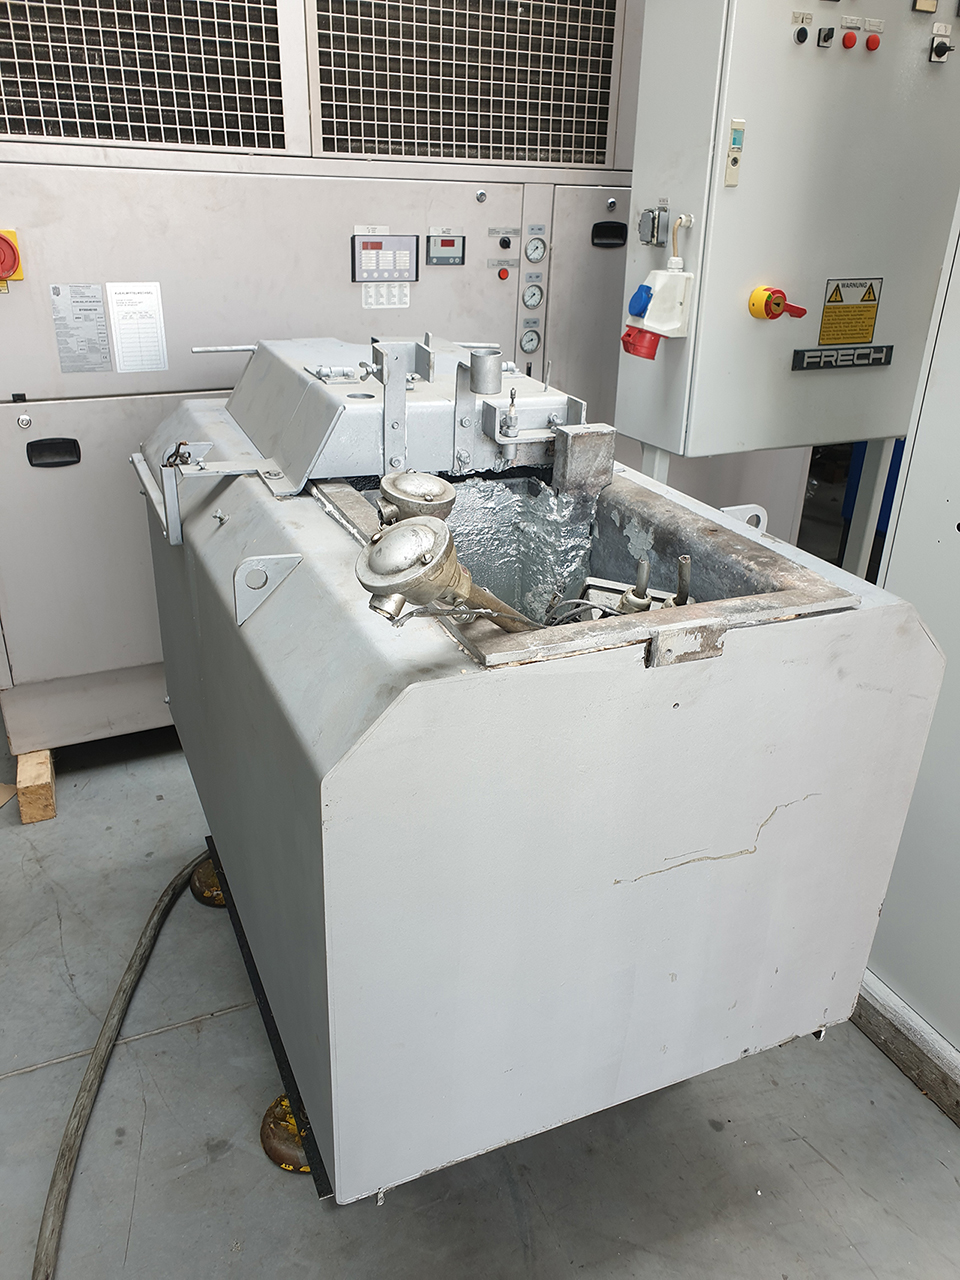 Frech DAW 80 S-RC machine de coulée sous pression à chambre chaude WK1409, utilisé